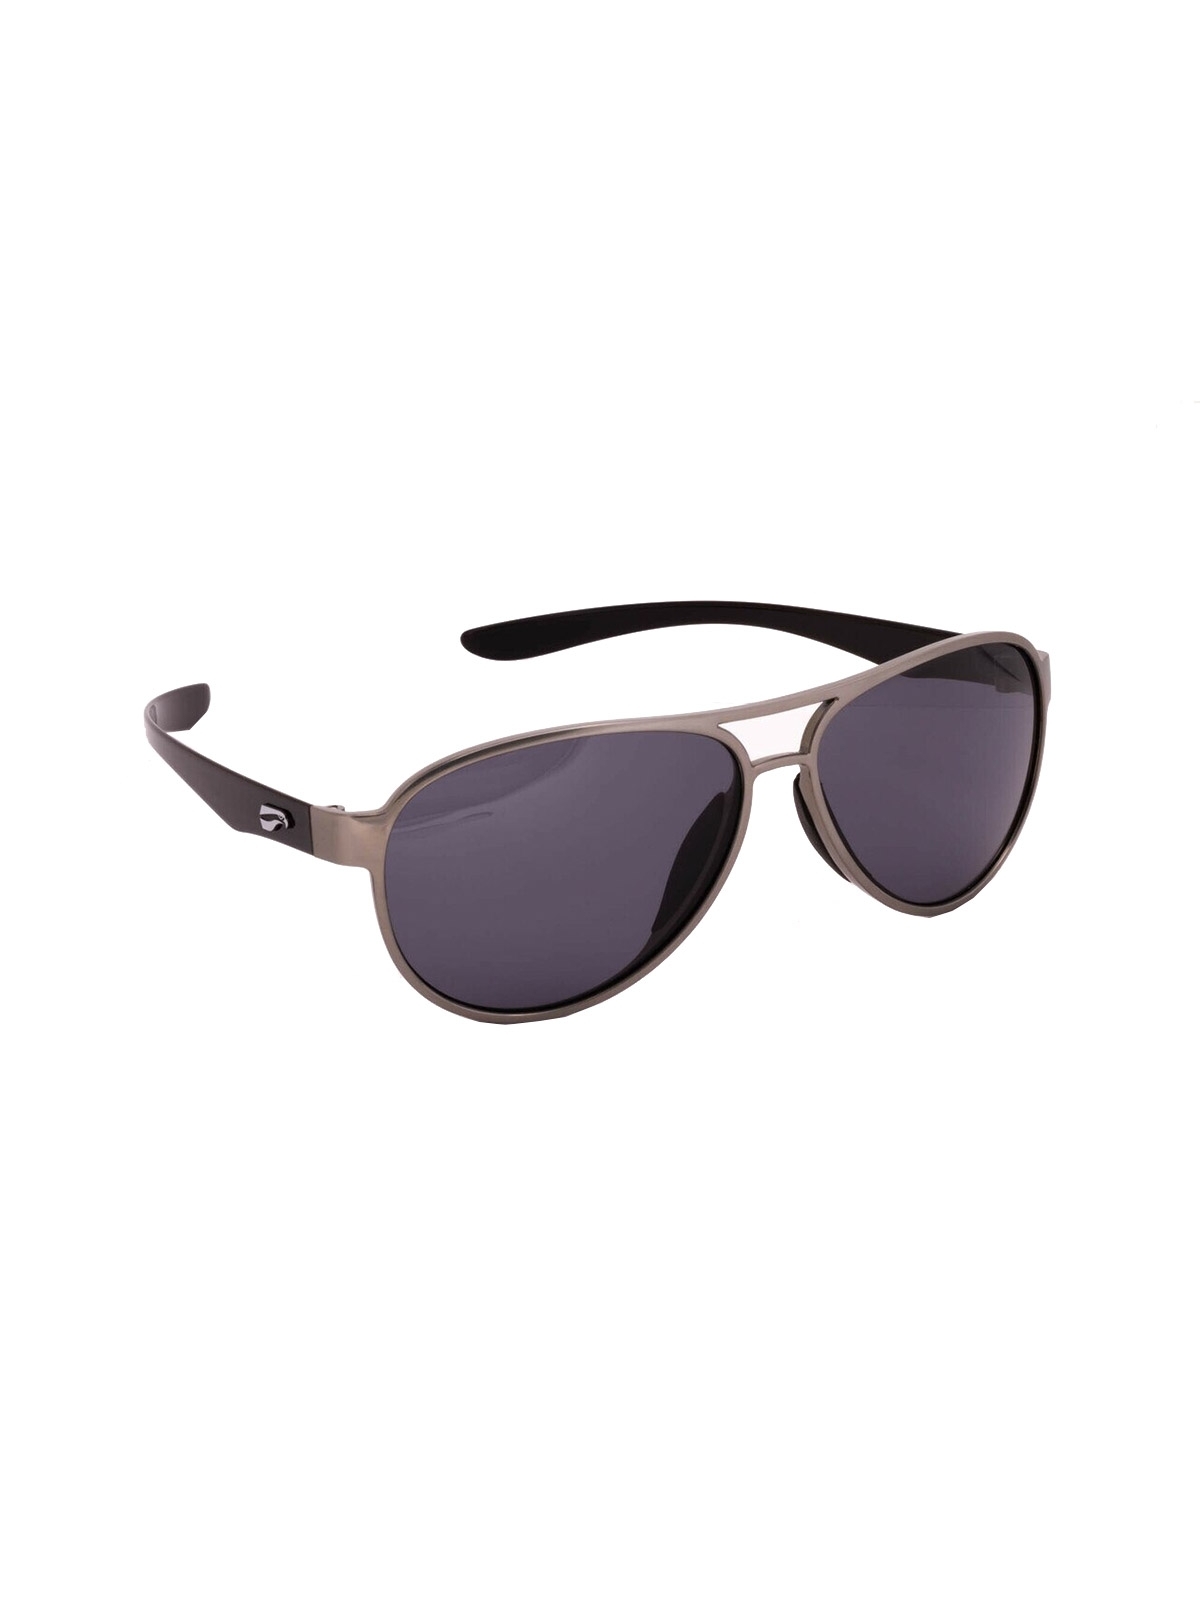 Flying Eyes Sunglasses Kestrel Aviator - Silver Front Frame, Solid Gray Lenses